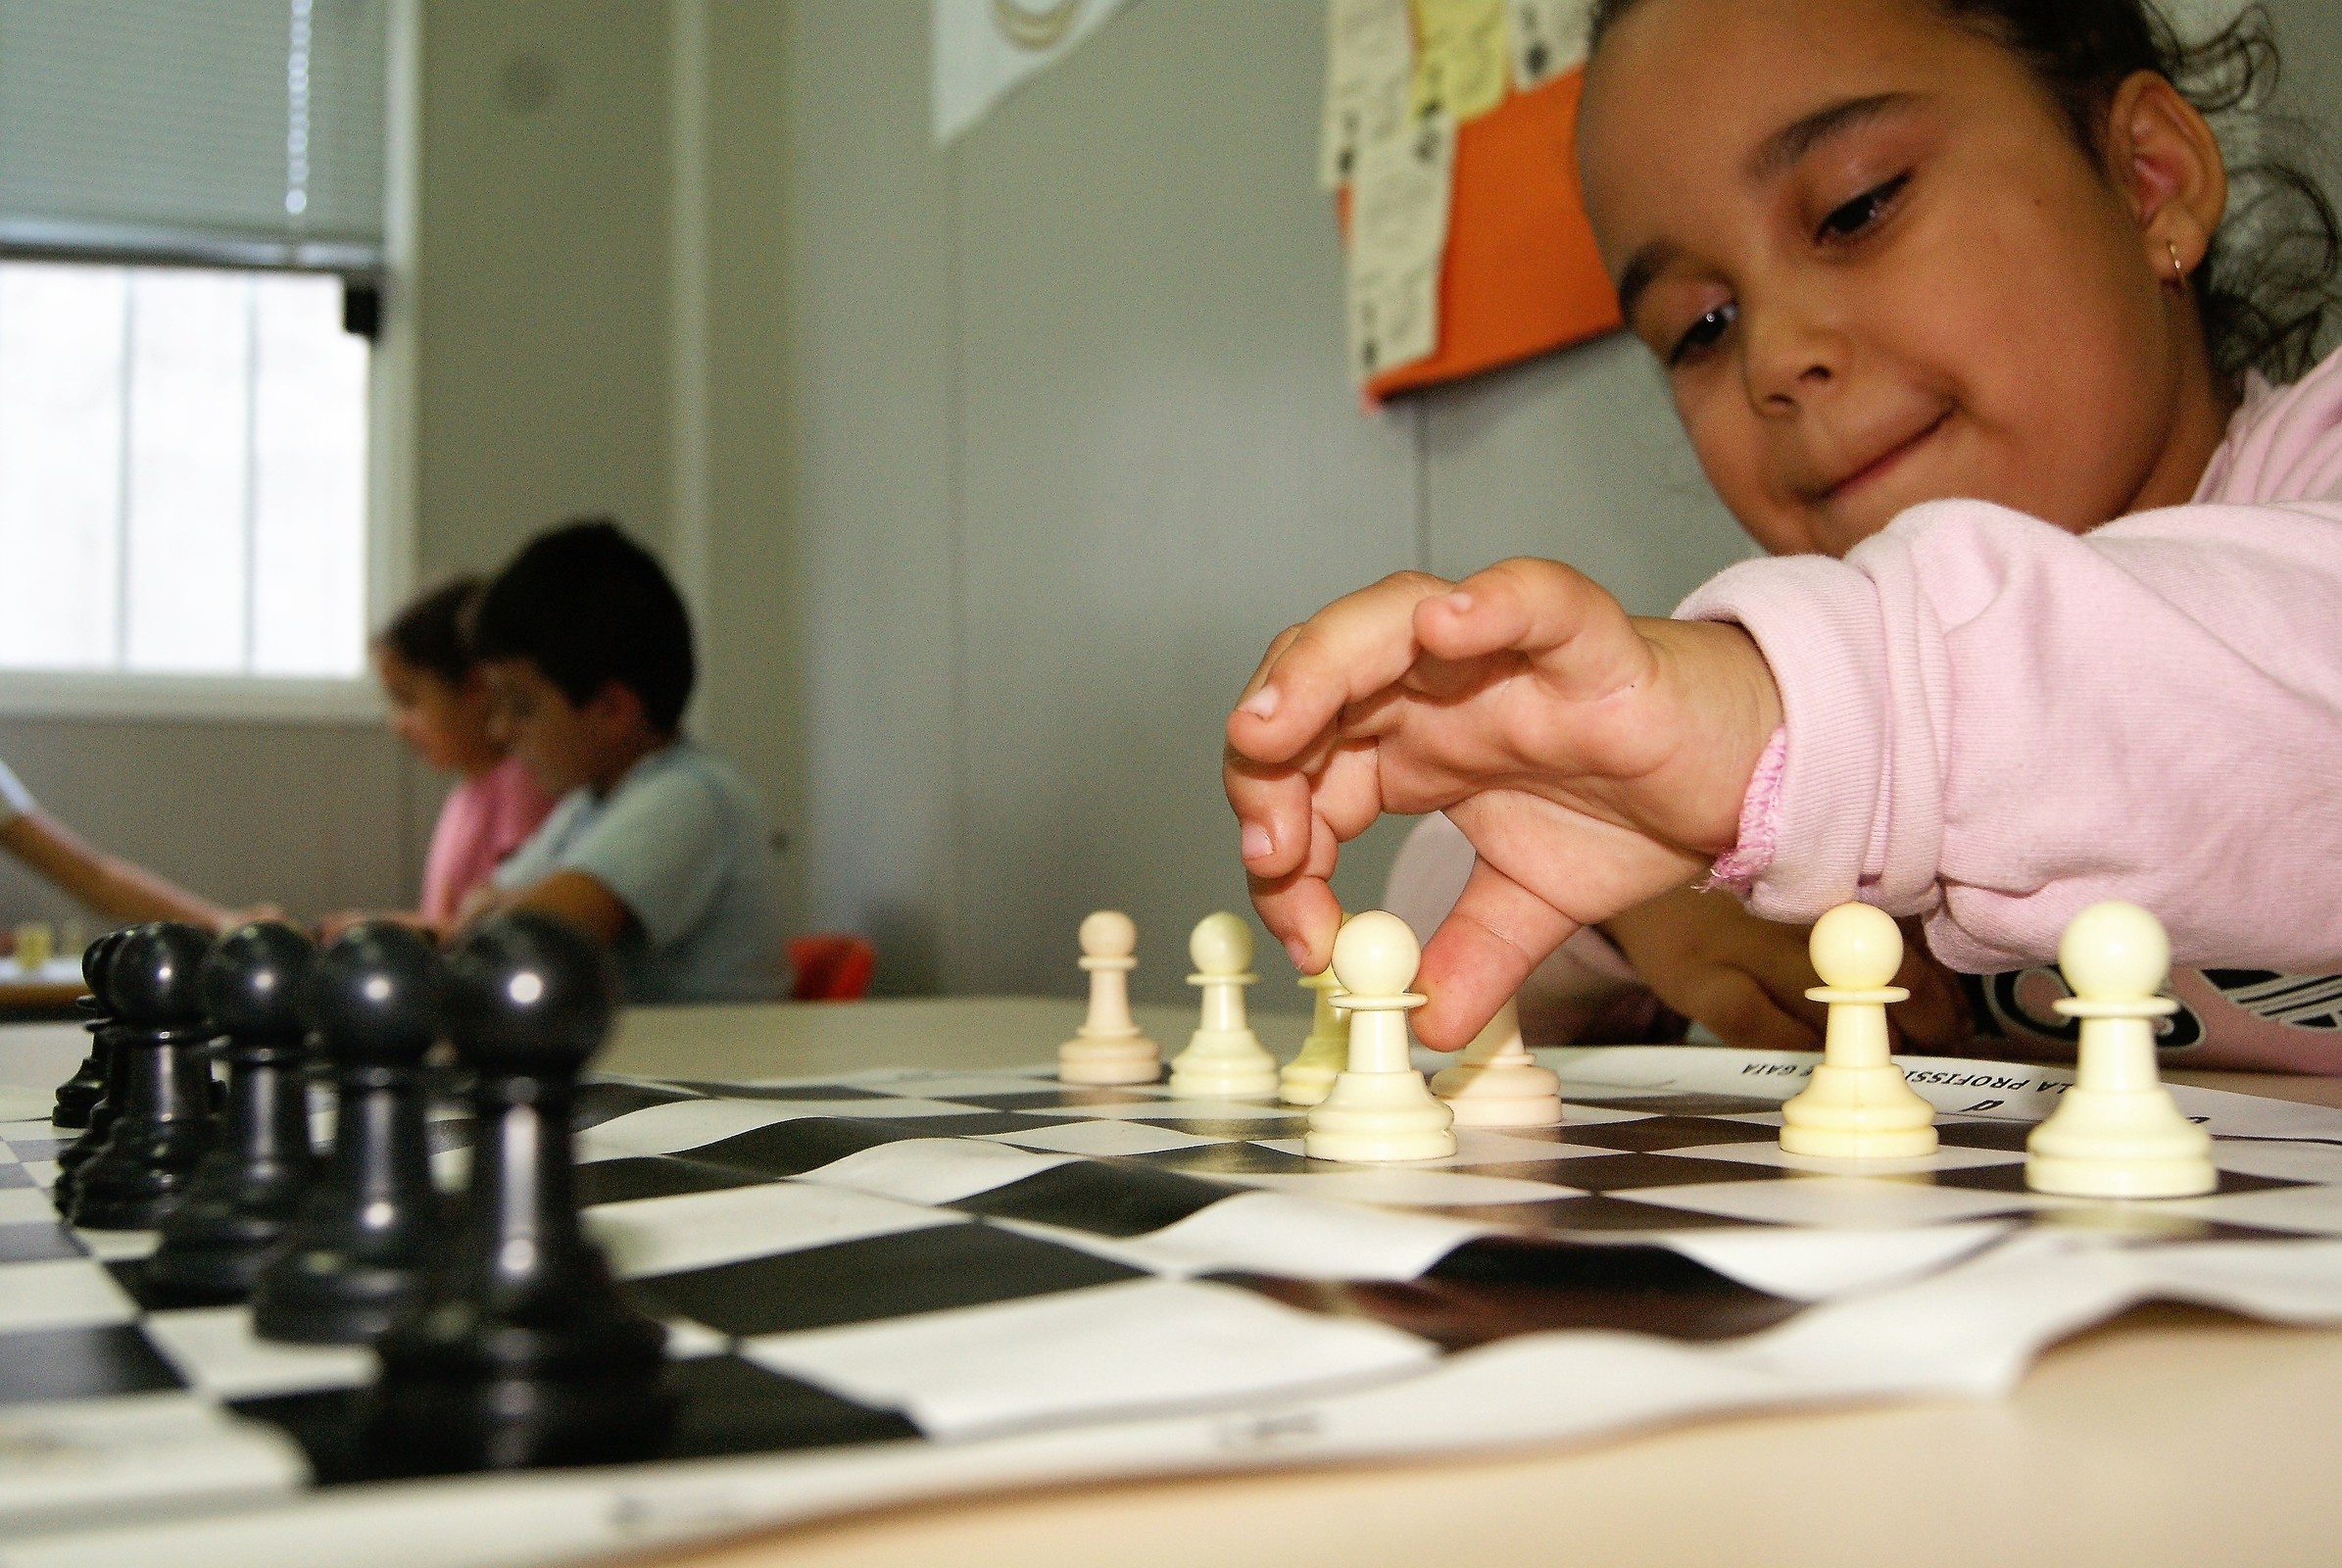 “Crianças da Gaiurb» participam nos Jogos Juvenis